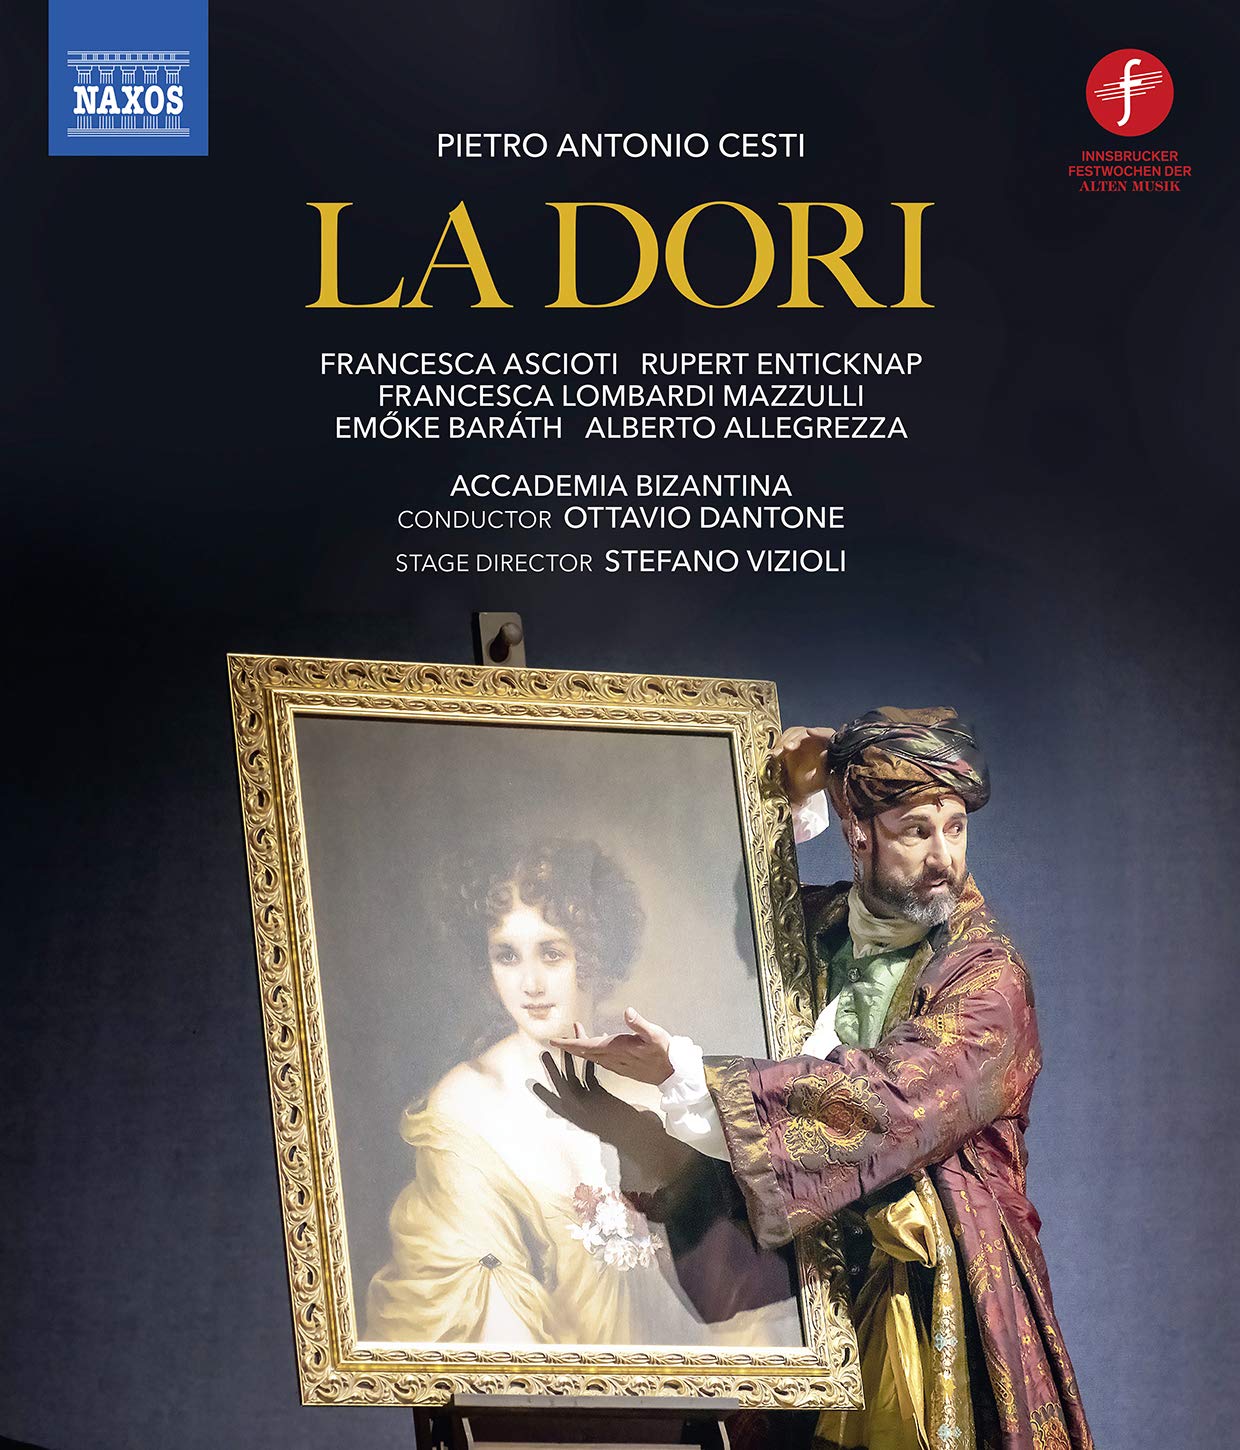 Music Blu-Ray Pietro Antonio Cesti - La Dori NUOVO SIGILLATO, EDIZIONE DEL 30/09/2020 SUBITO DISPONIBILE